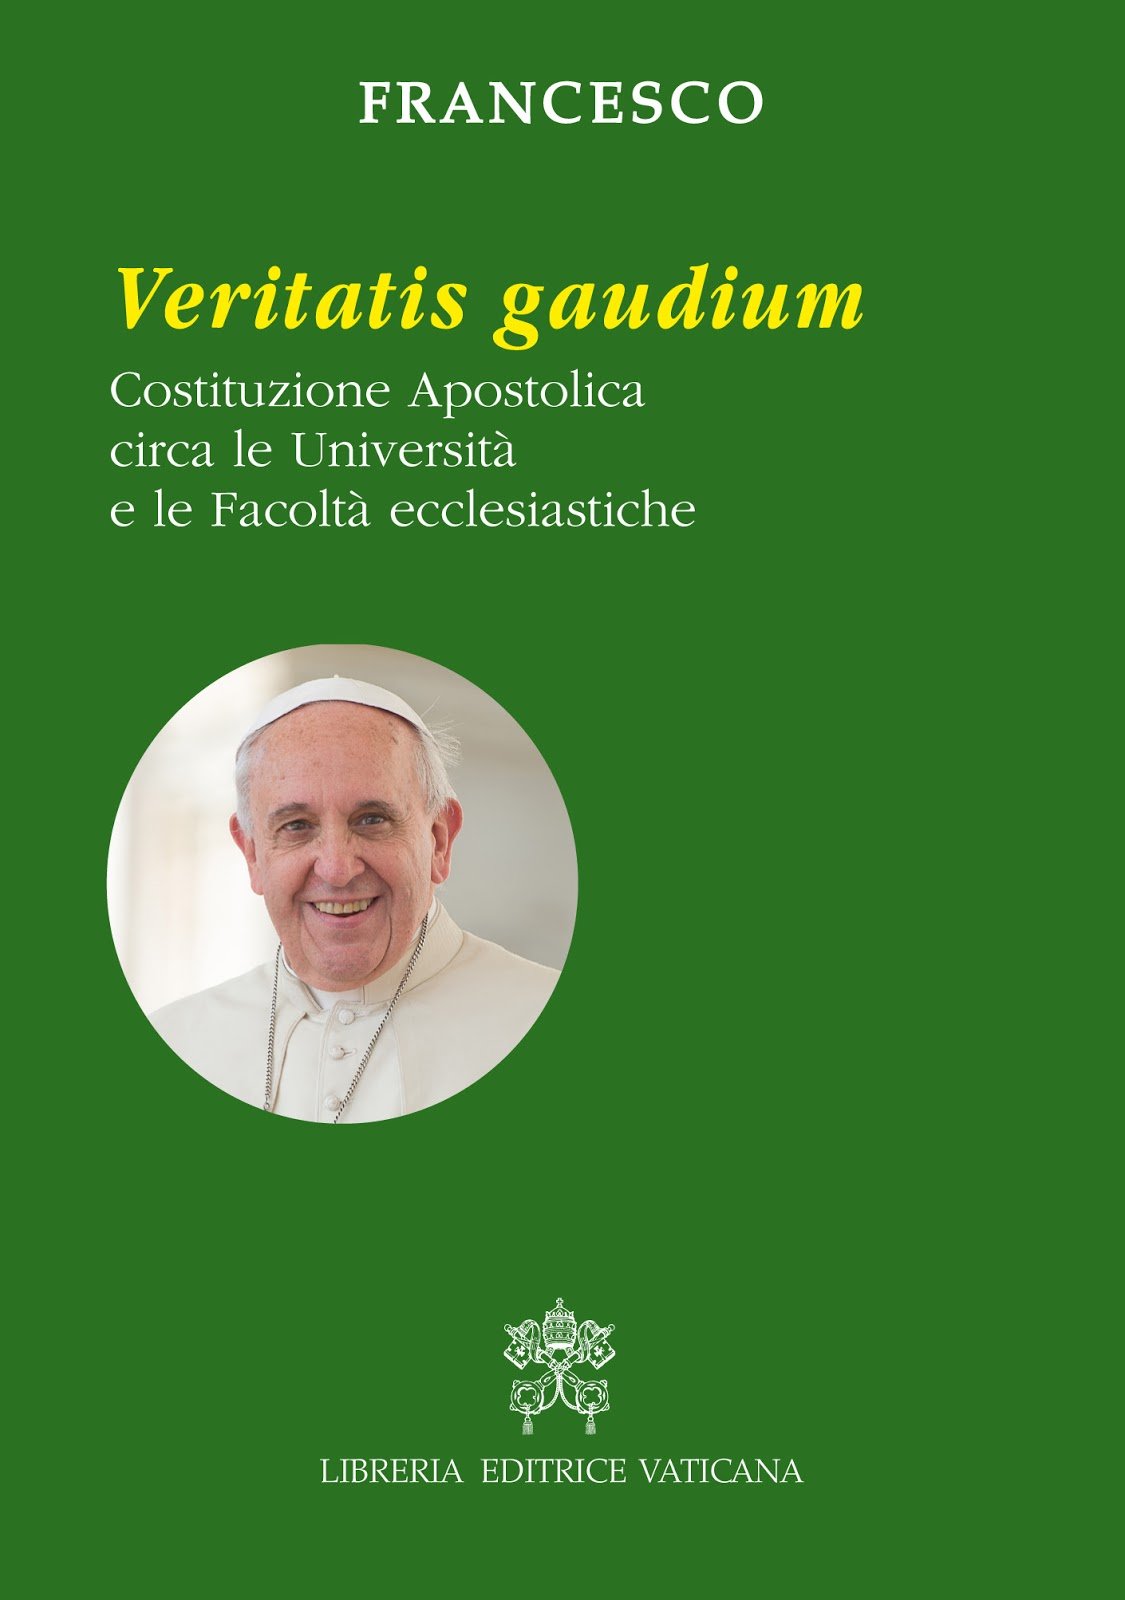 Papa pede uma ''revolução cultural'' às universidades católicas - Instituto  Humanitas Unisinos - IHU